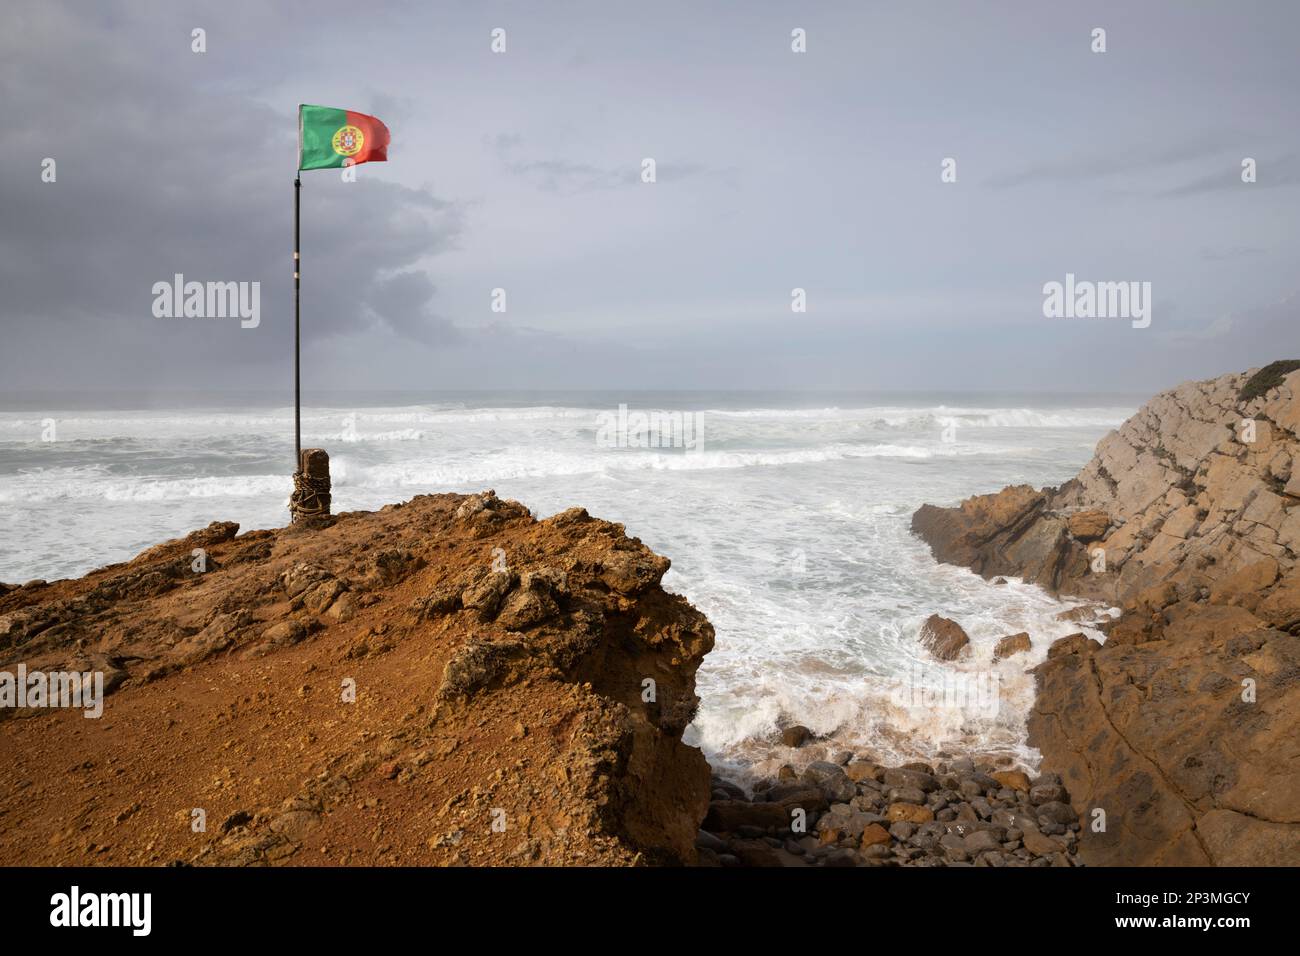 Drapeau portugais volant dans le vent avec les vagues de l'océan Atlantique orageux se brisant sur la plage de Praia do Guincho Banque D'Images